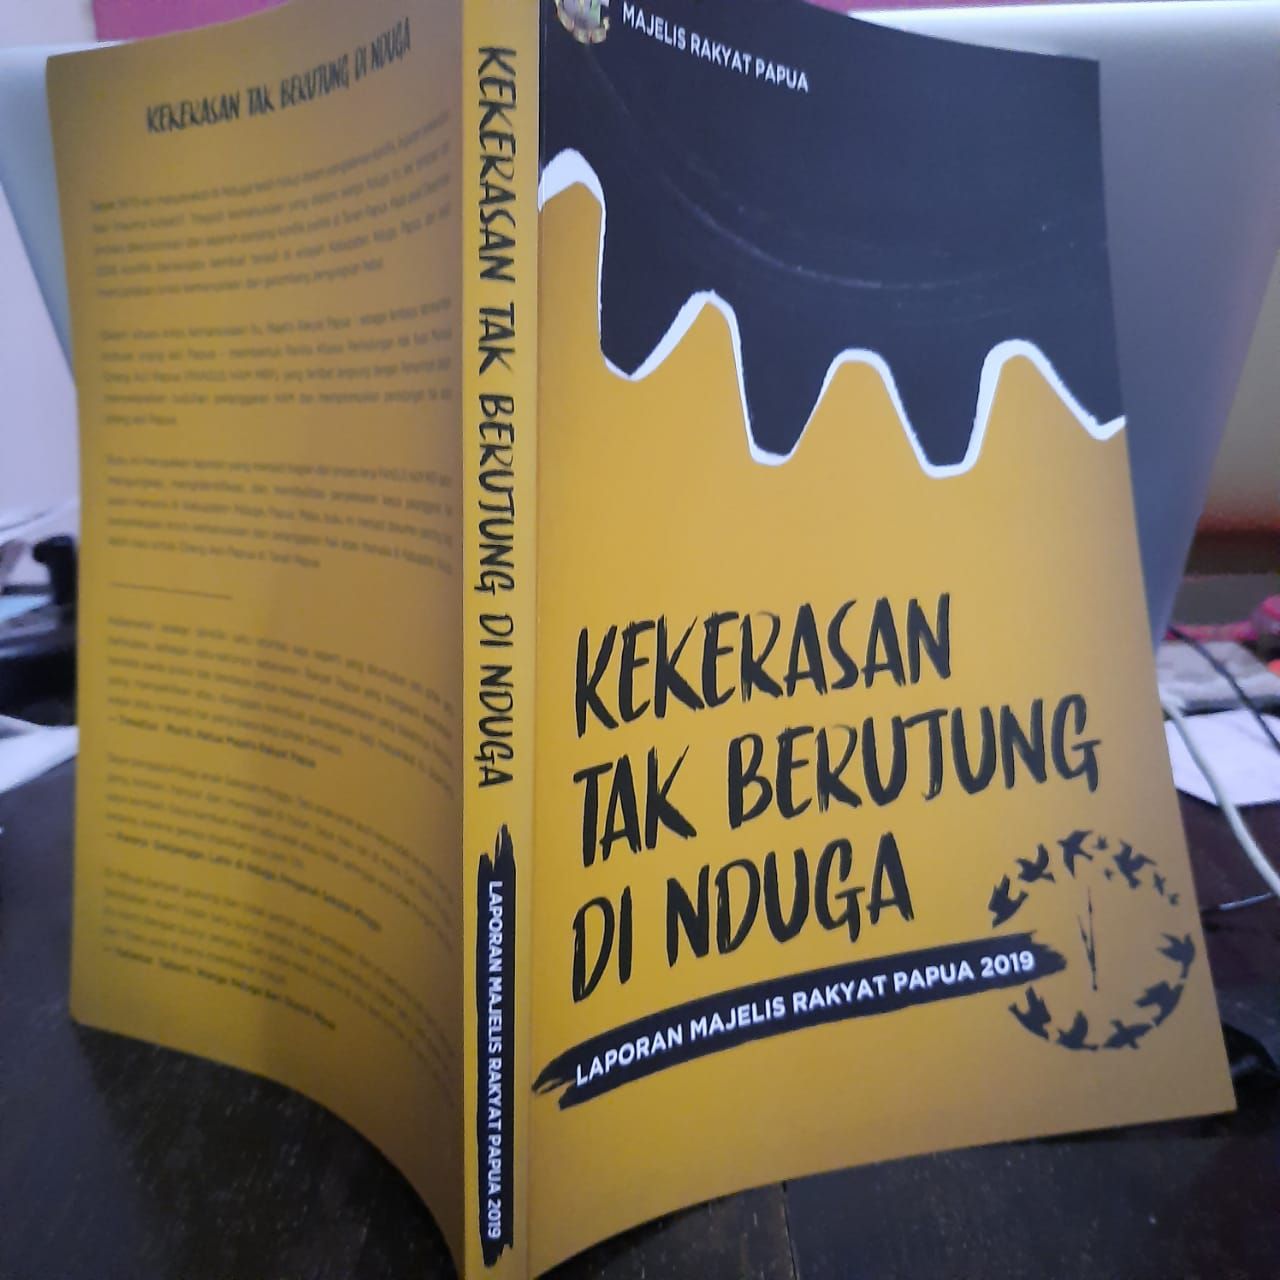 Majelis Rakyat Papua meluncurkan buku “Kekerasan tak Berujung di Nduga” di Jayapura, Papua, pada Senin (9/12/2019). – Jubi/Benny Mawel